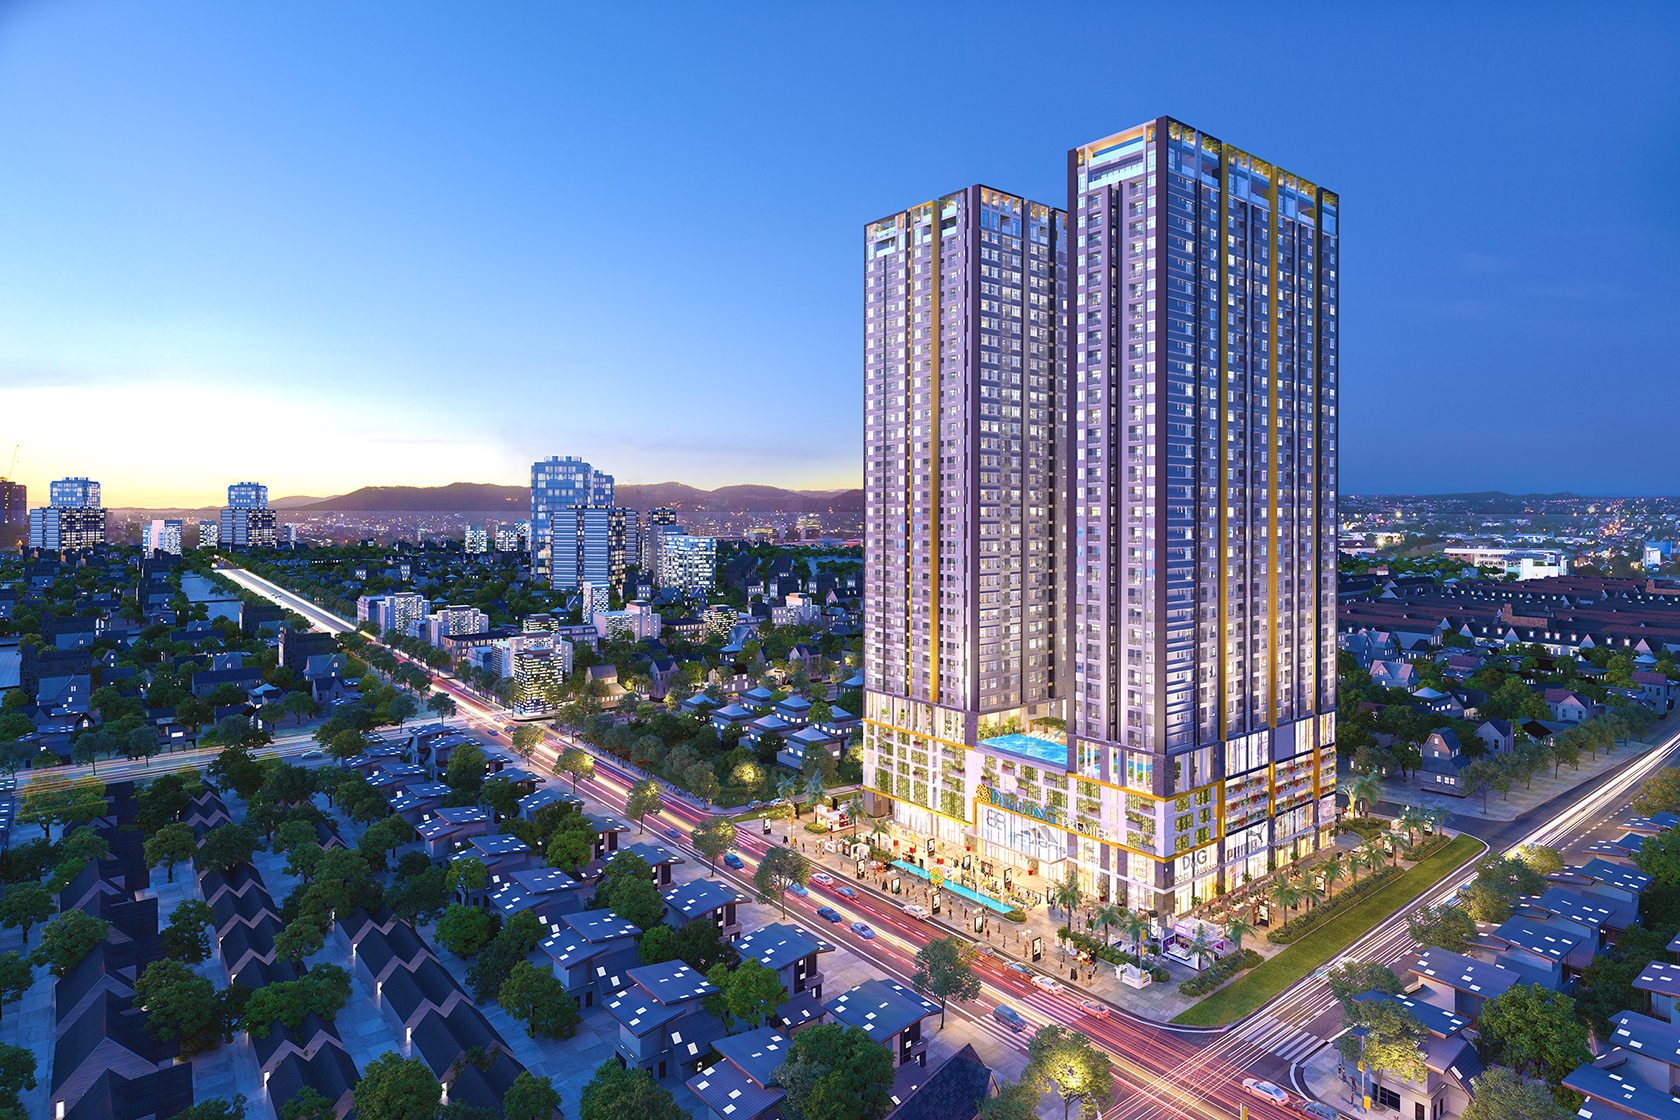 Căn hộ Phú Đông Premier với mức giá 1,35 tỷ/căn hộ, đang được đón nhận trên thị trường